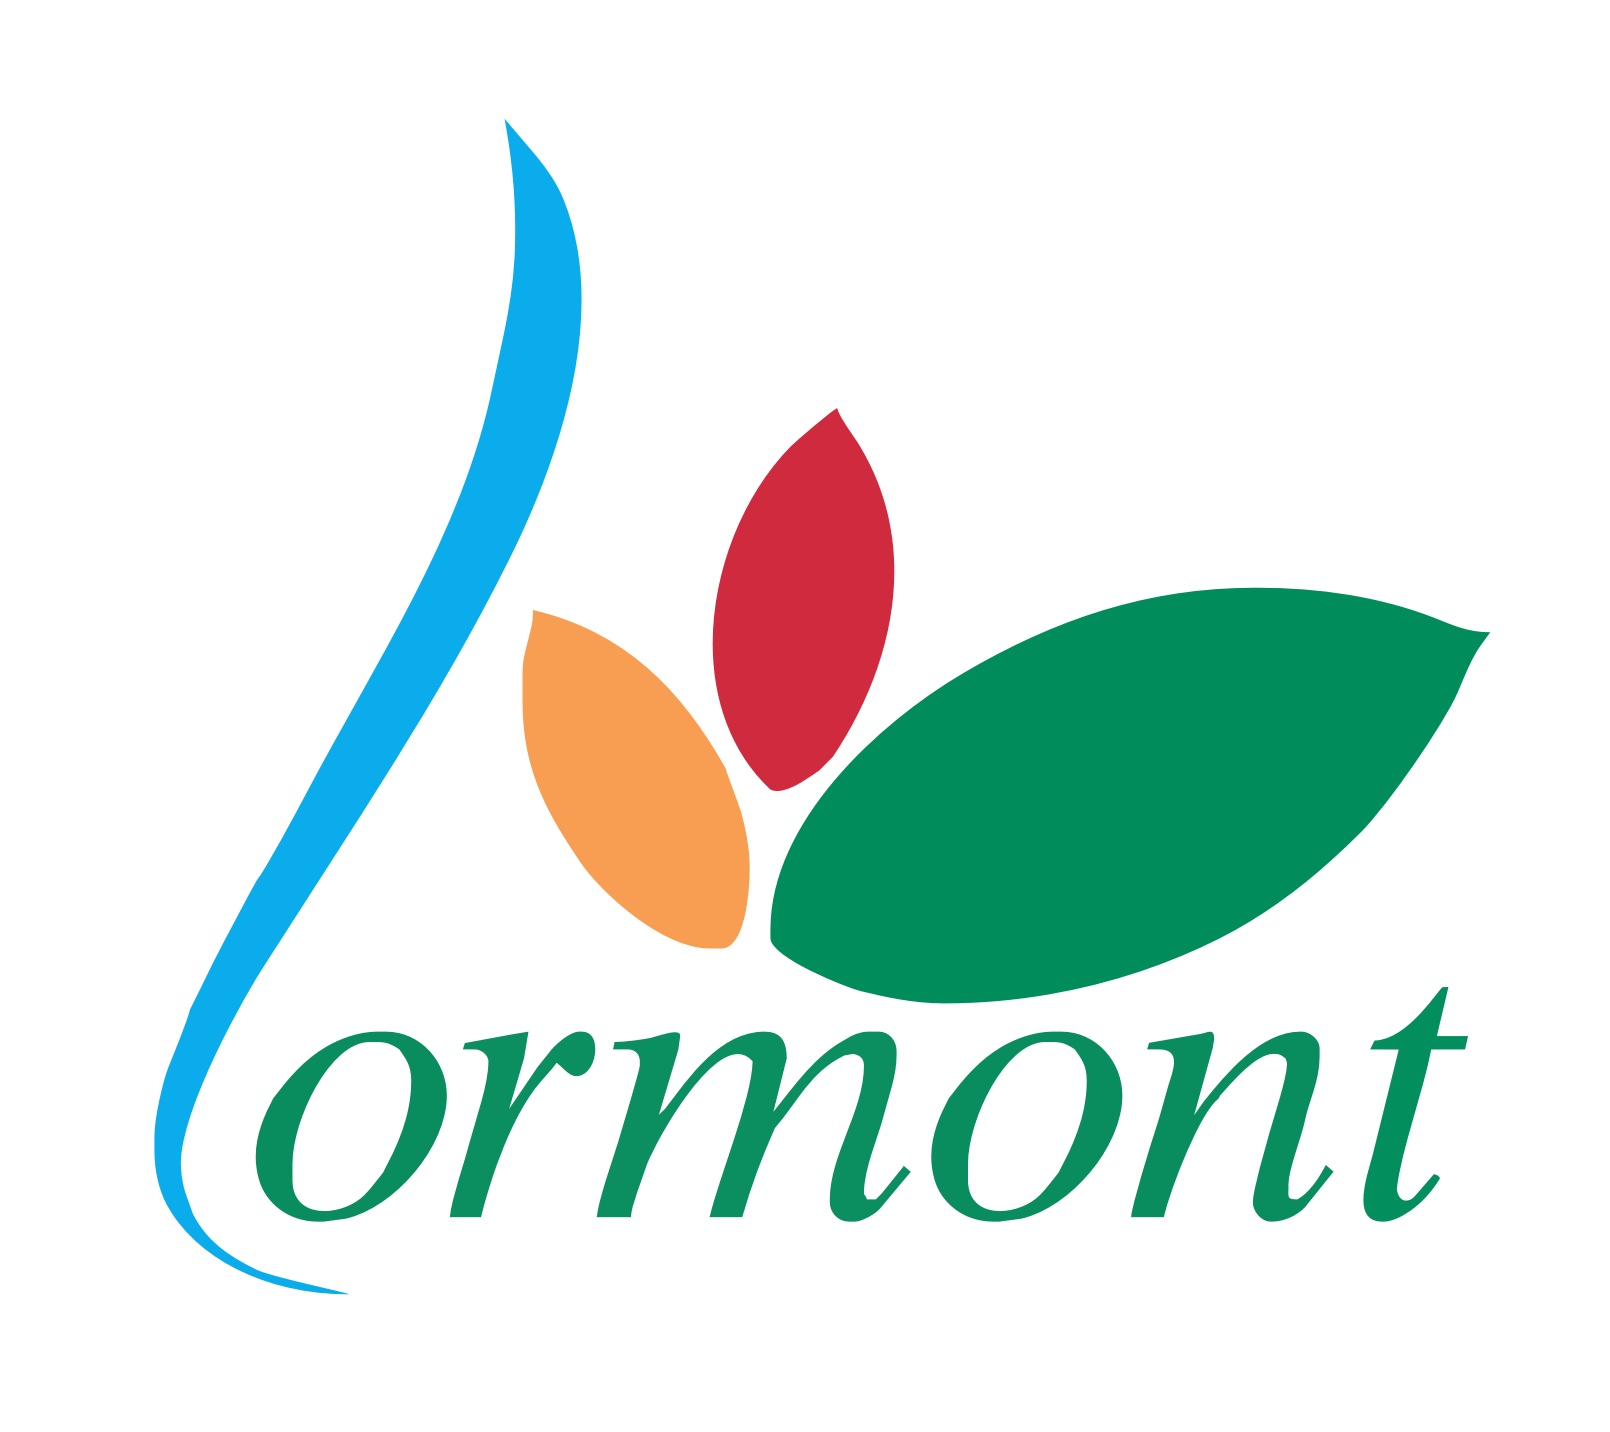 Lormont